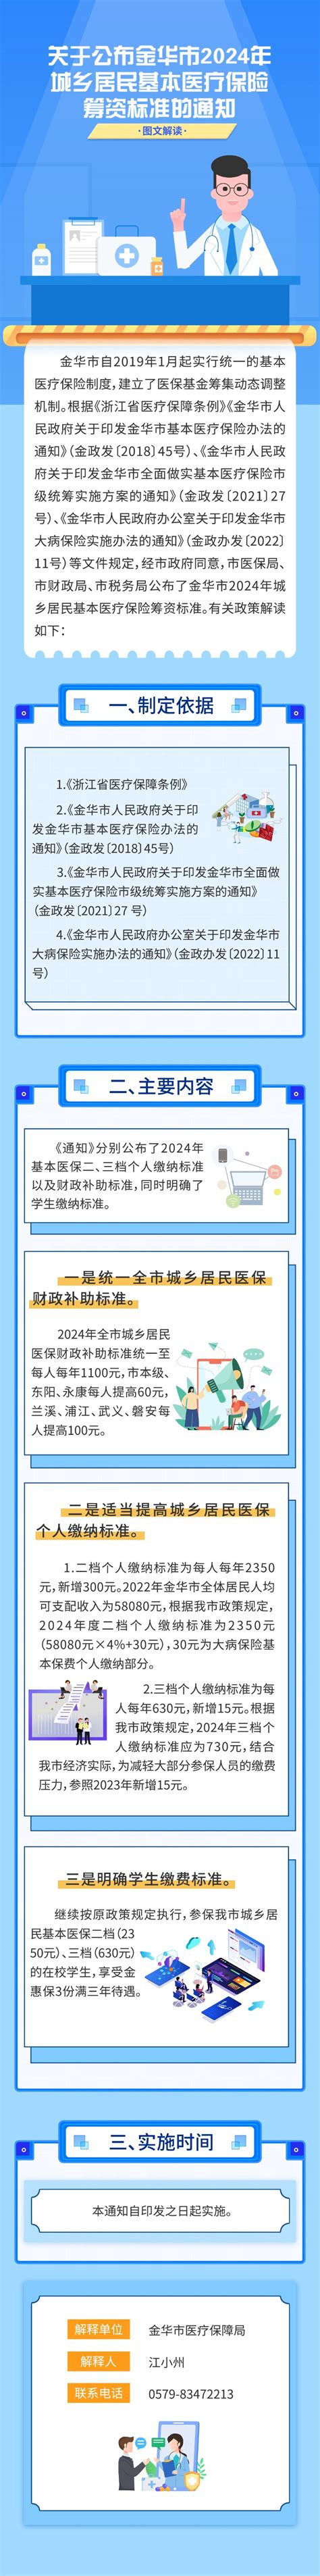 金华婺城数字报刊平台-专项监督推进营商环境优化提升